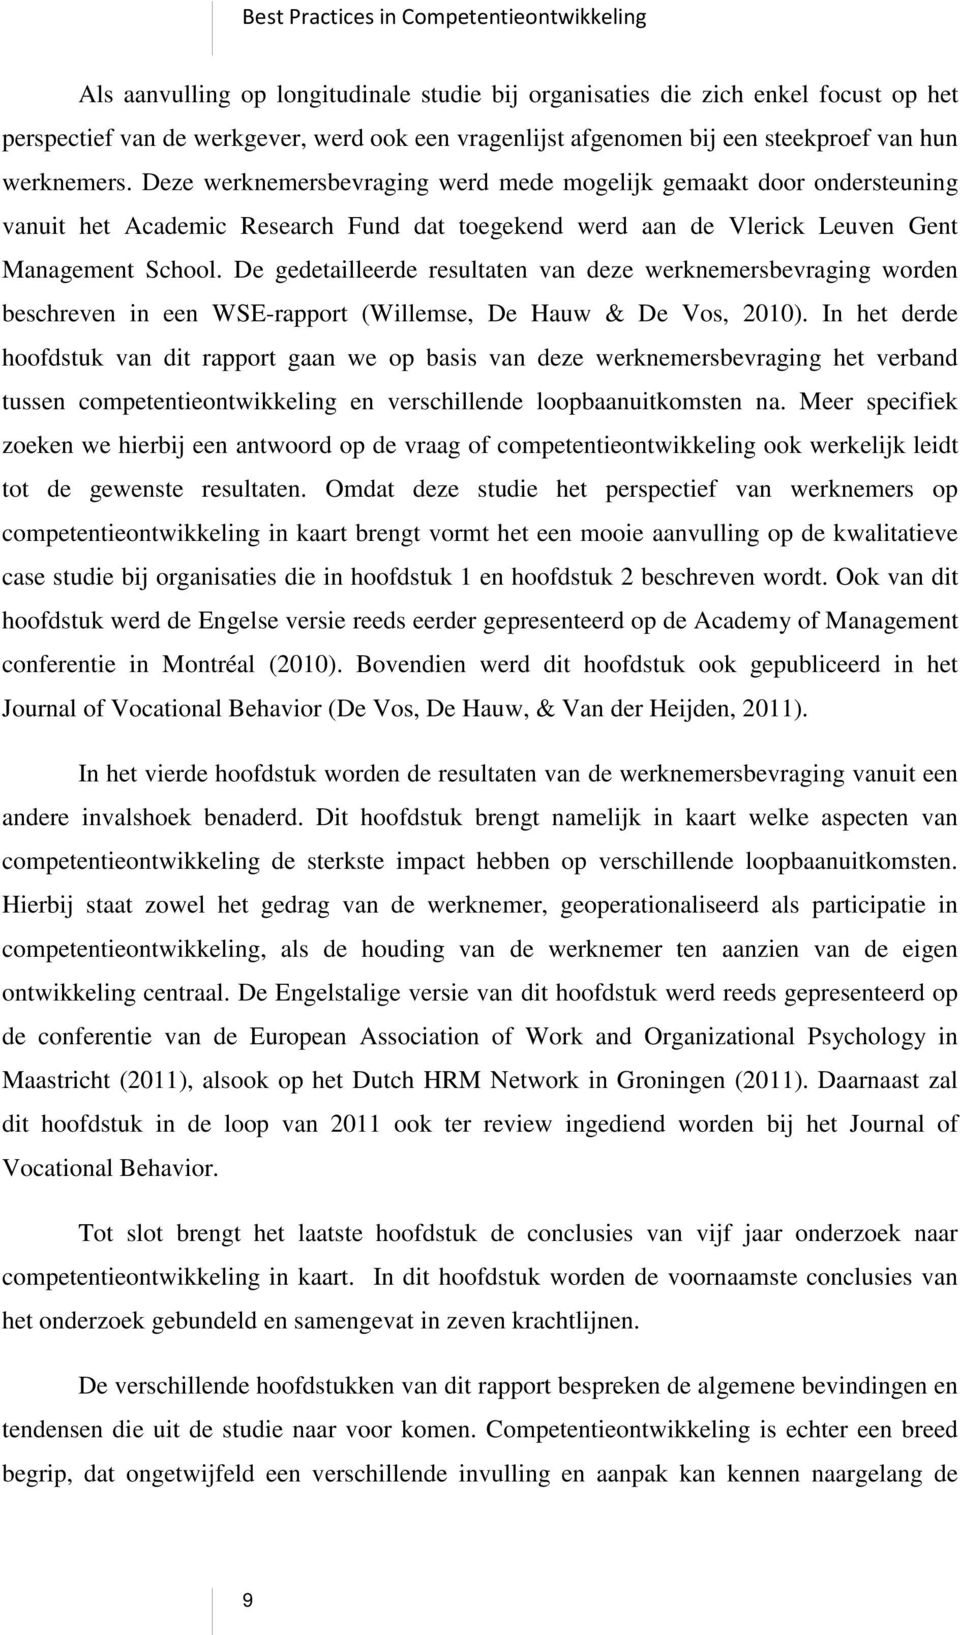 De gedetailleerde resultaten van deze werknemersbevraging worden beschreven in een WSE-rapport (Willemse, De Hauw & De Vos, 2010).